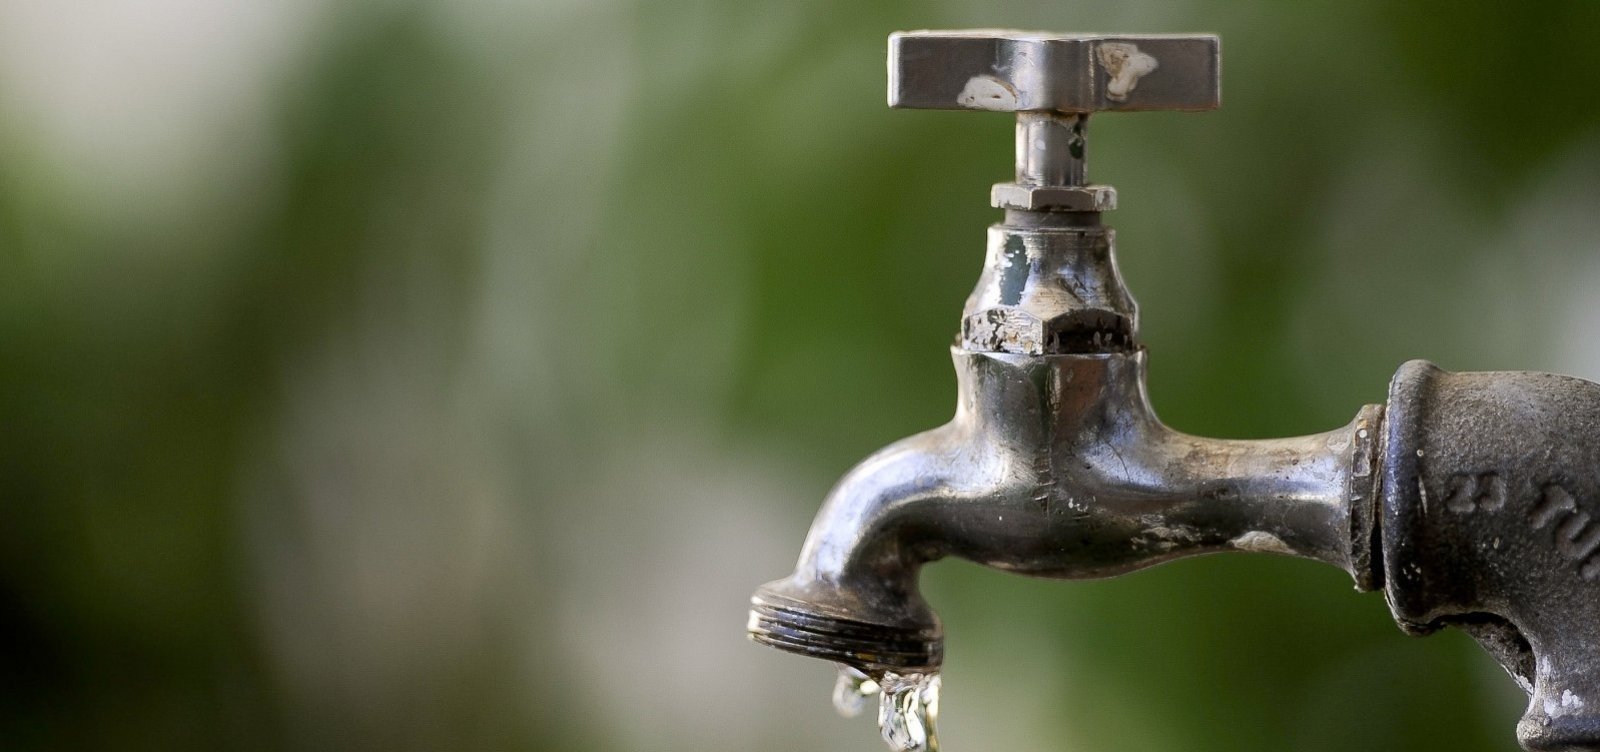 Abastecimento de água será suspenso em mais de 100 bairros de Salvador e outras oito cidades baianas 2